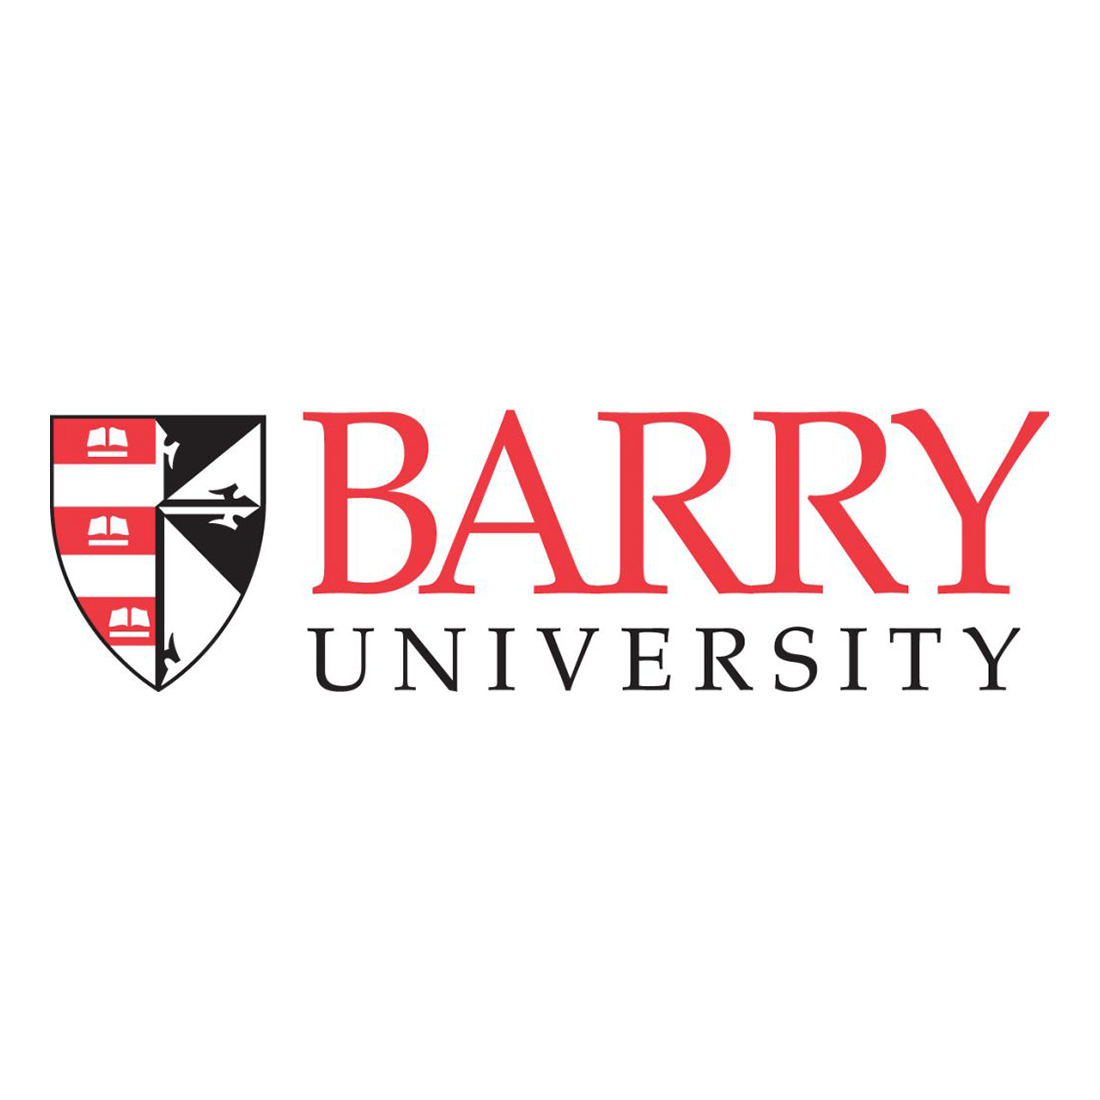 Barry-University-logo - Admiral Farragut Academy